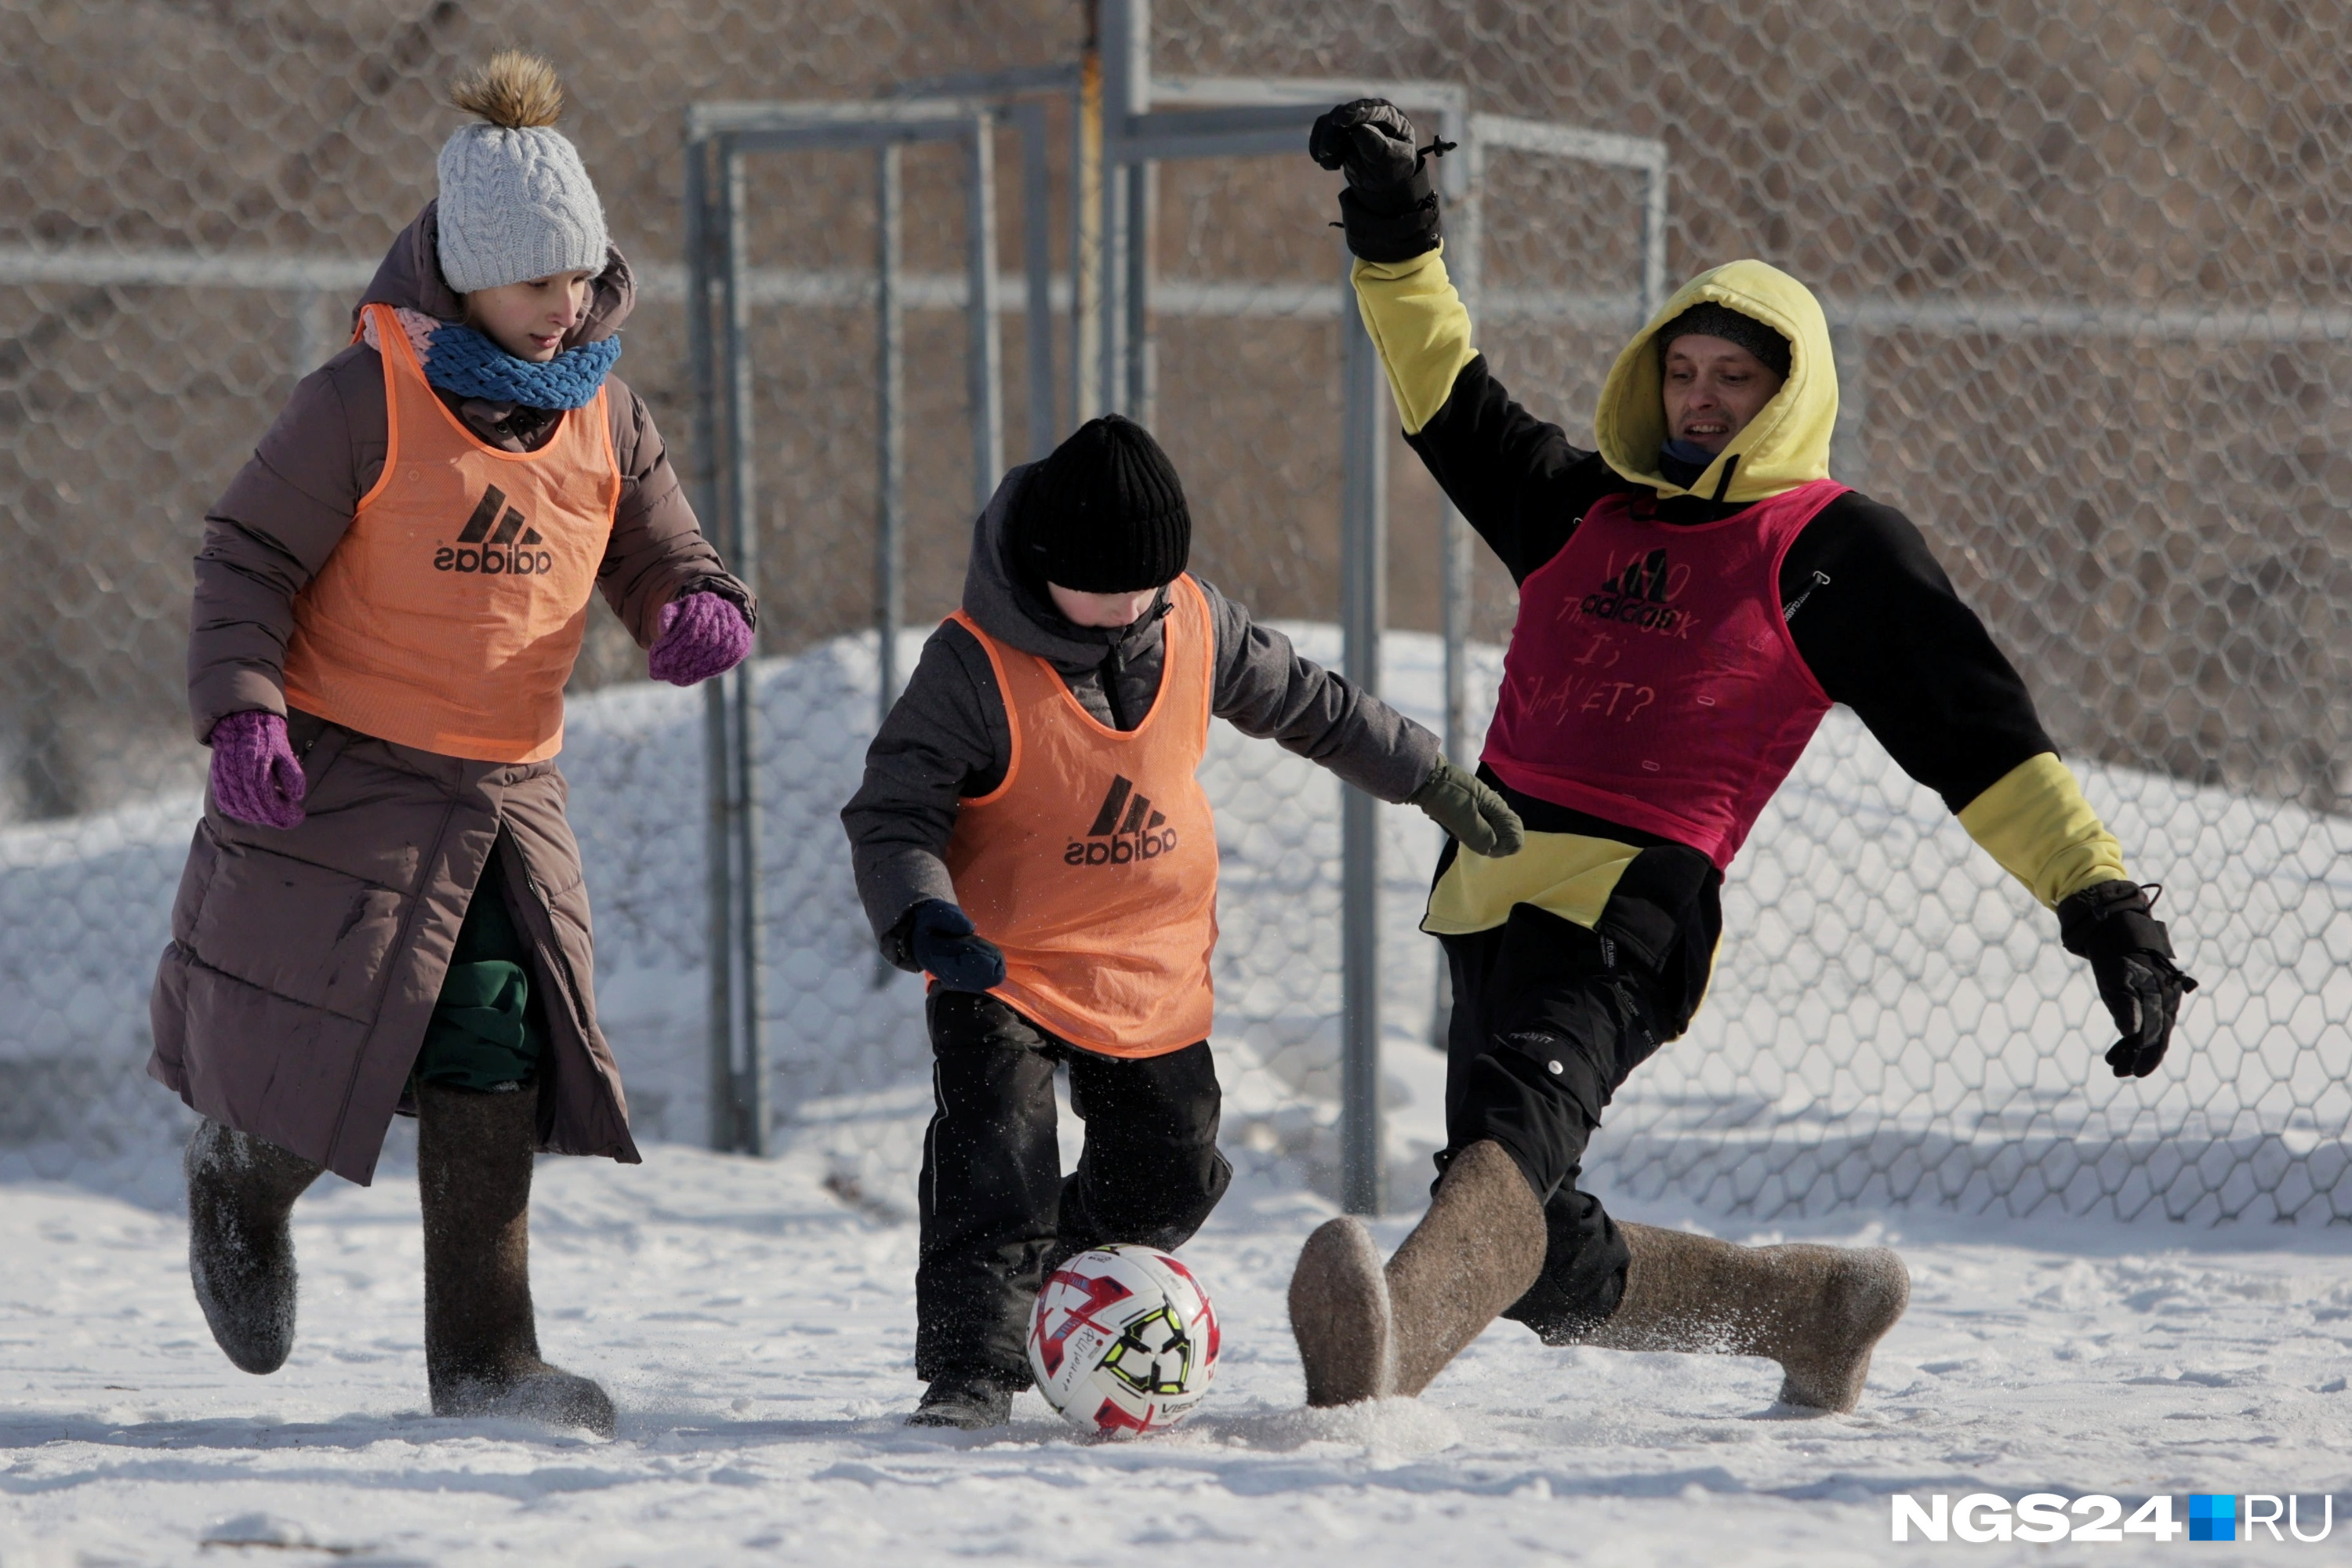 «Трудно пинать и бежать»: красноярцы поиграли в футбол в валенках. Фото с забавного турнира